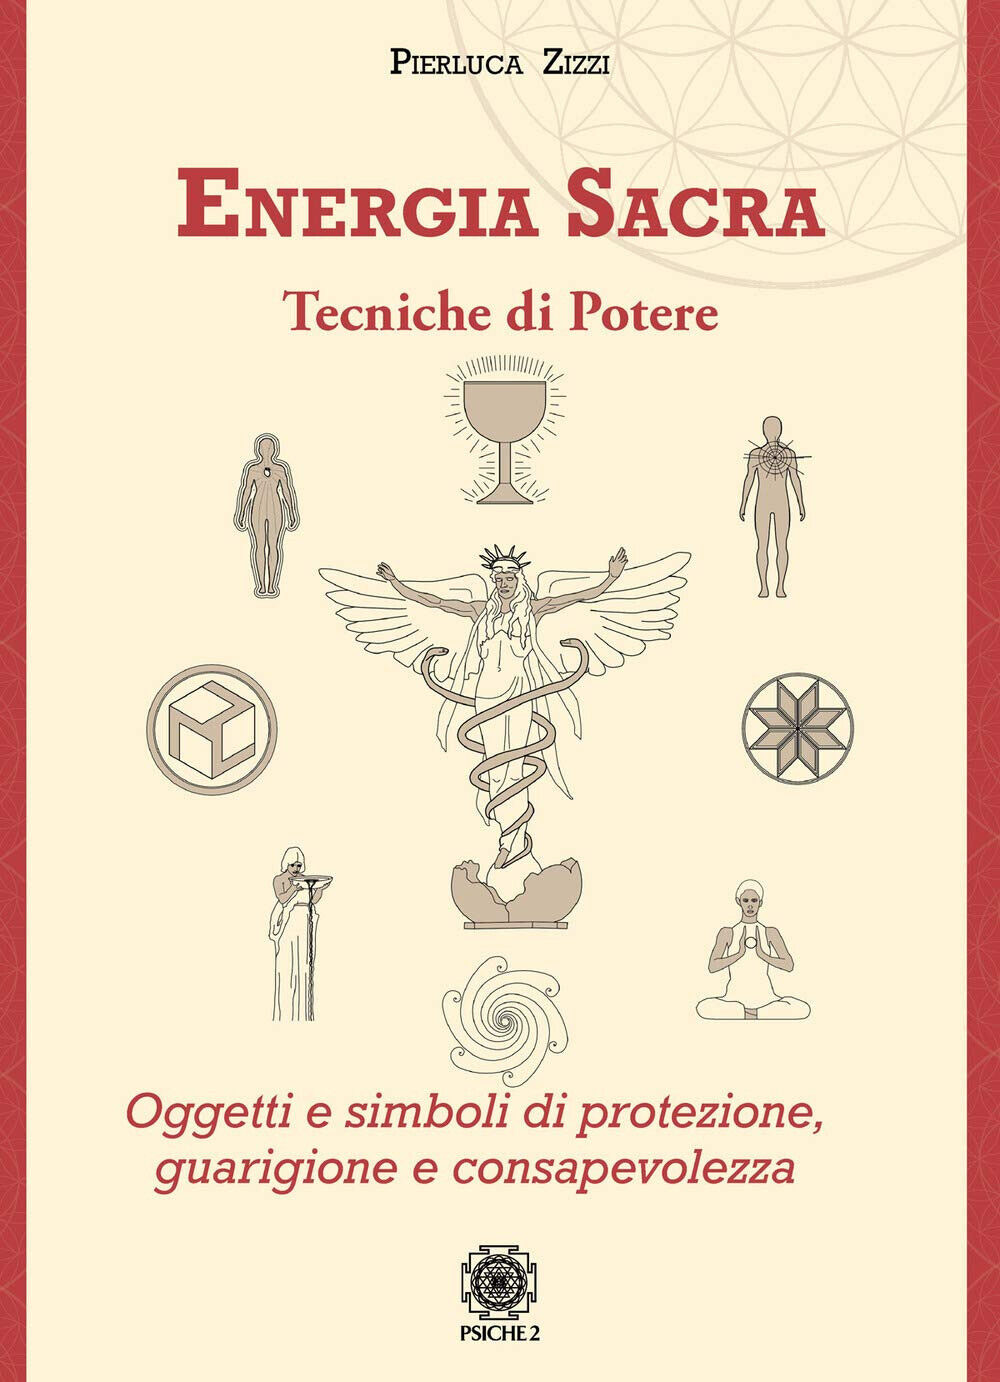 Energia sacra - Pierluca Zizzi - psiche 2, 2020